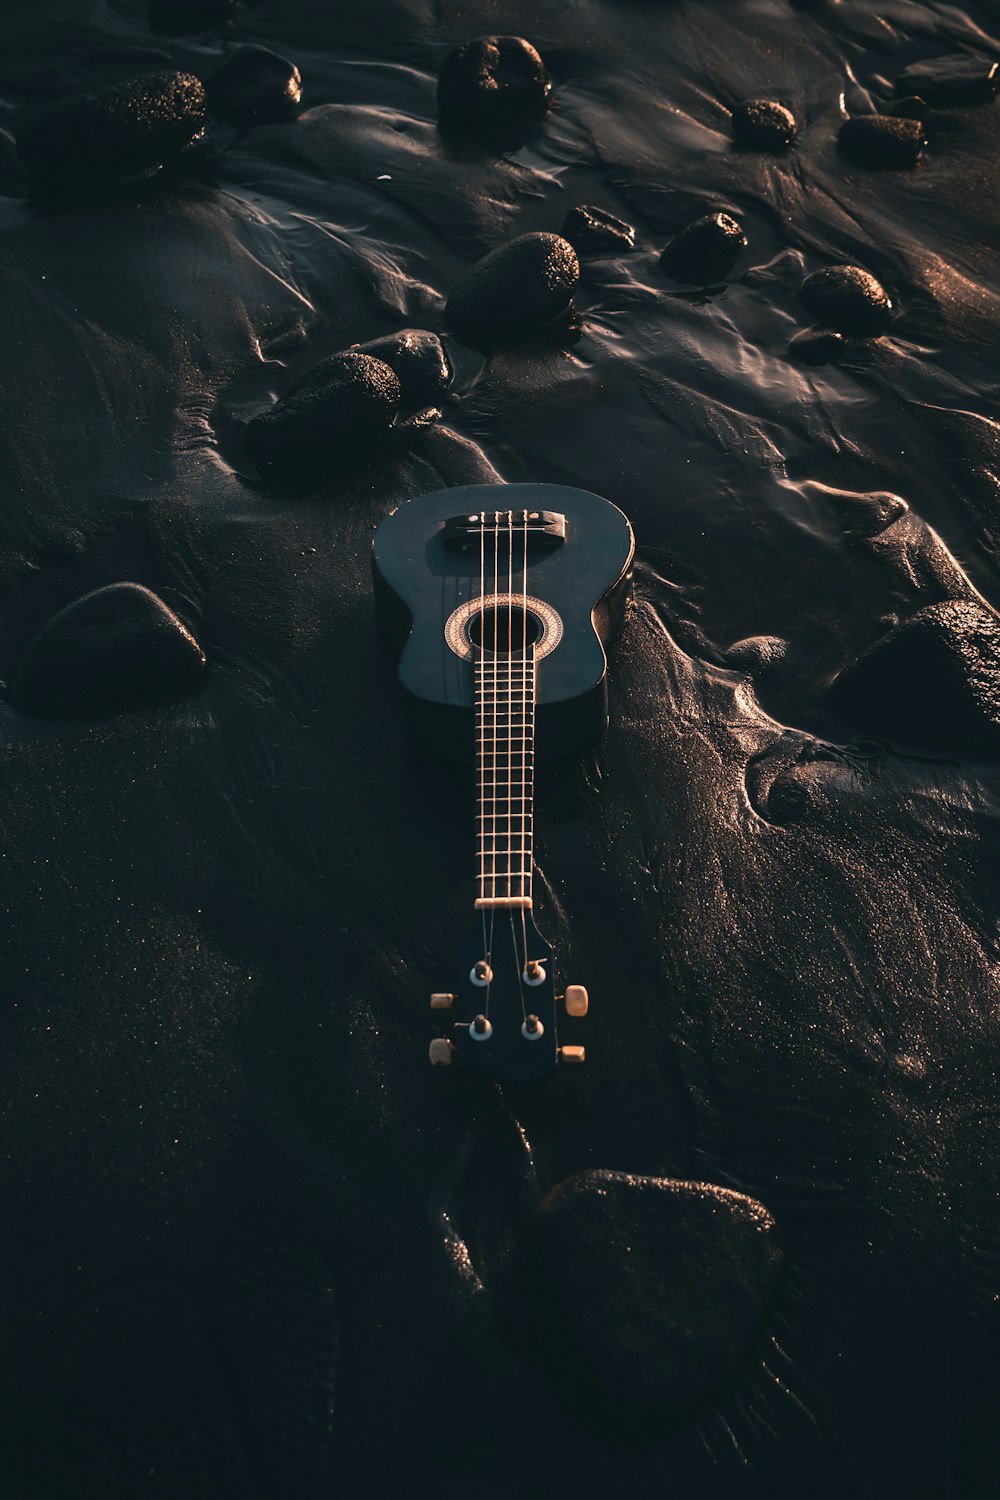 guitarra elétrica branca e preta na areia preta